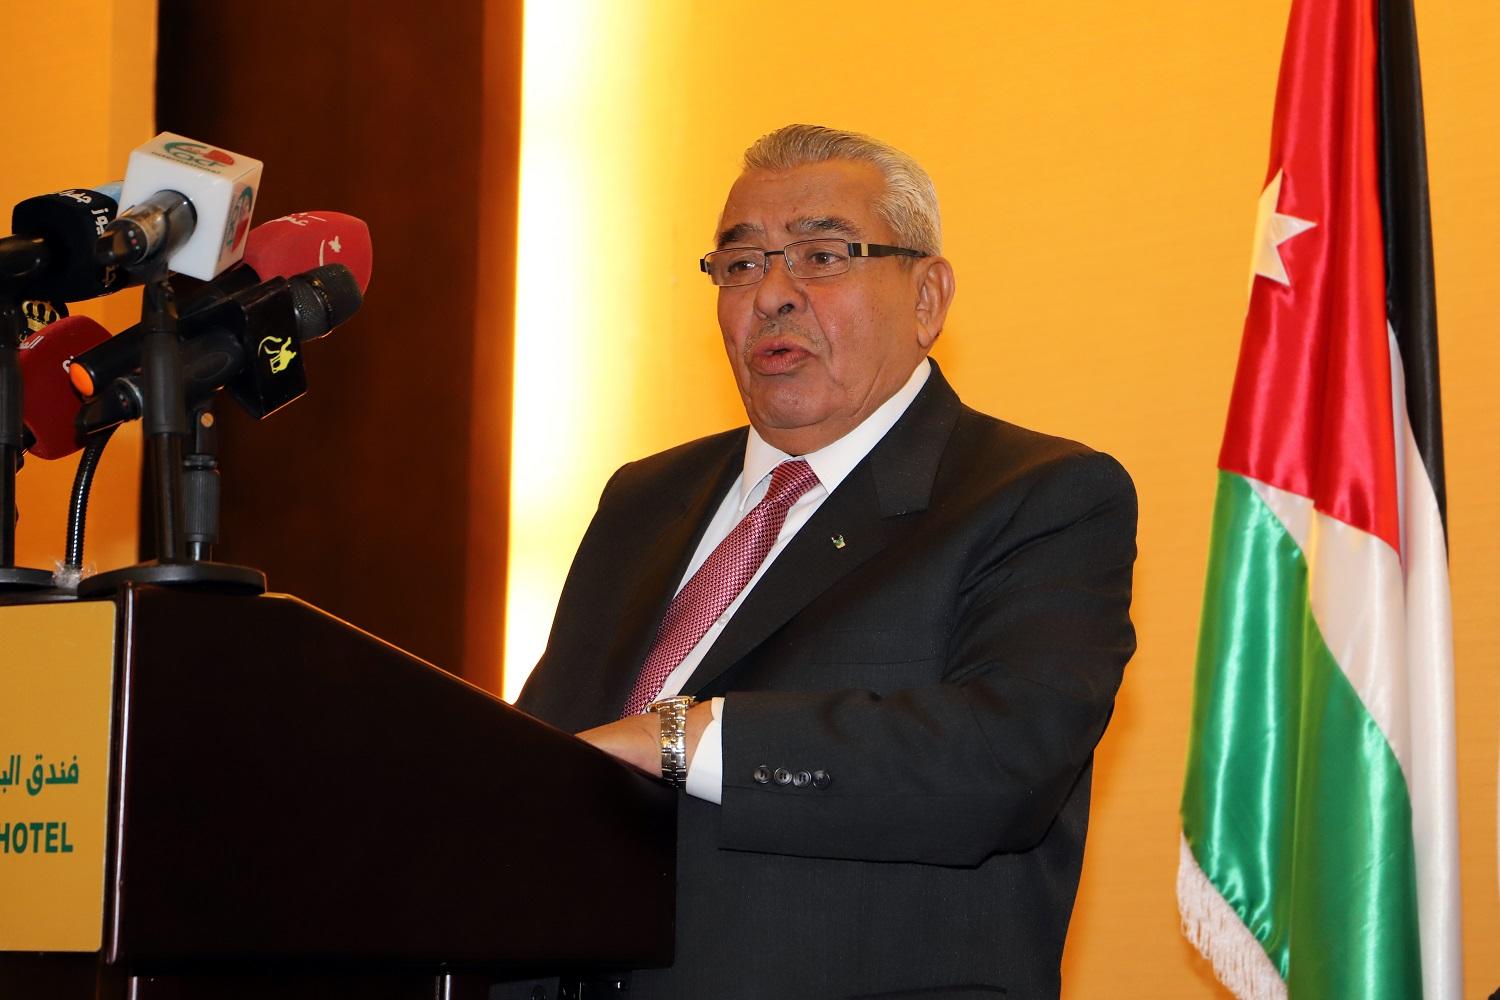  رئيس الوزراء الأسبق عبد الرؤوف الروابدة خلال رعايته حفل انطلاق المؤتمر. بترا